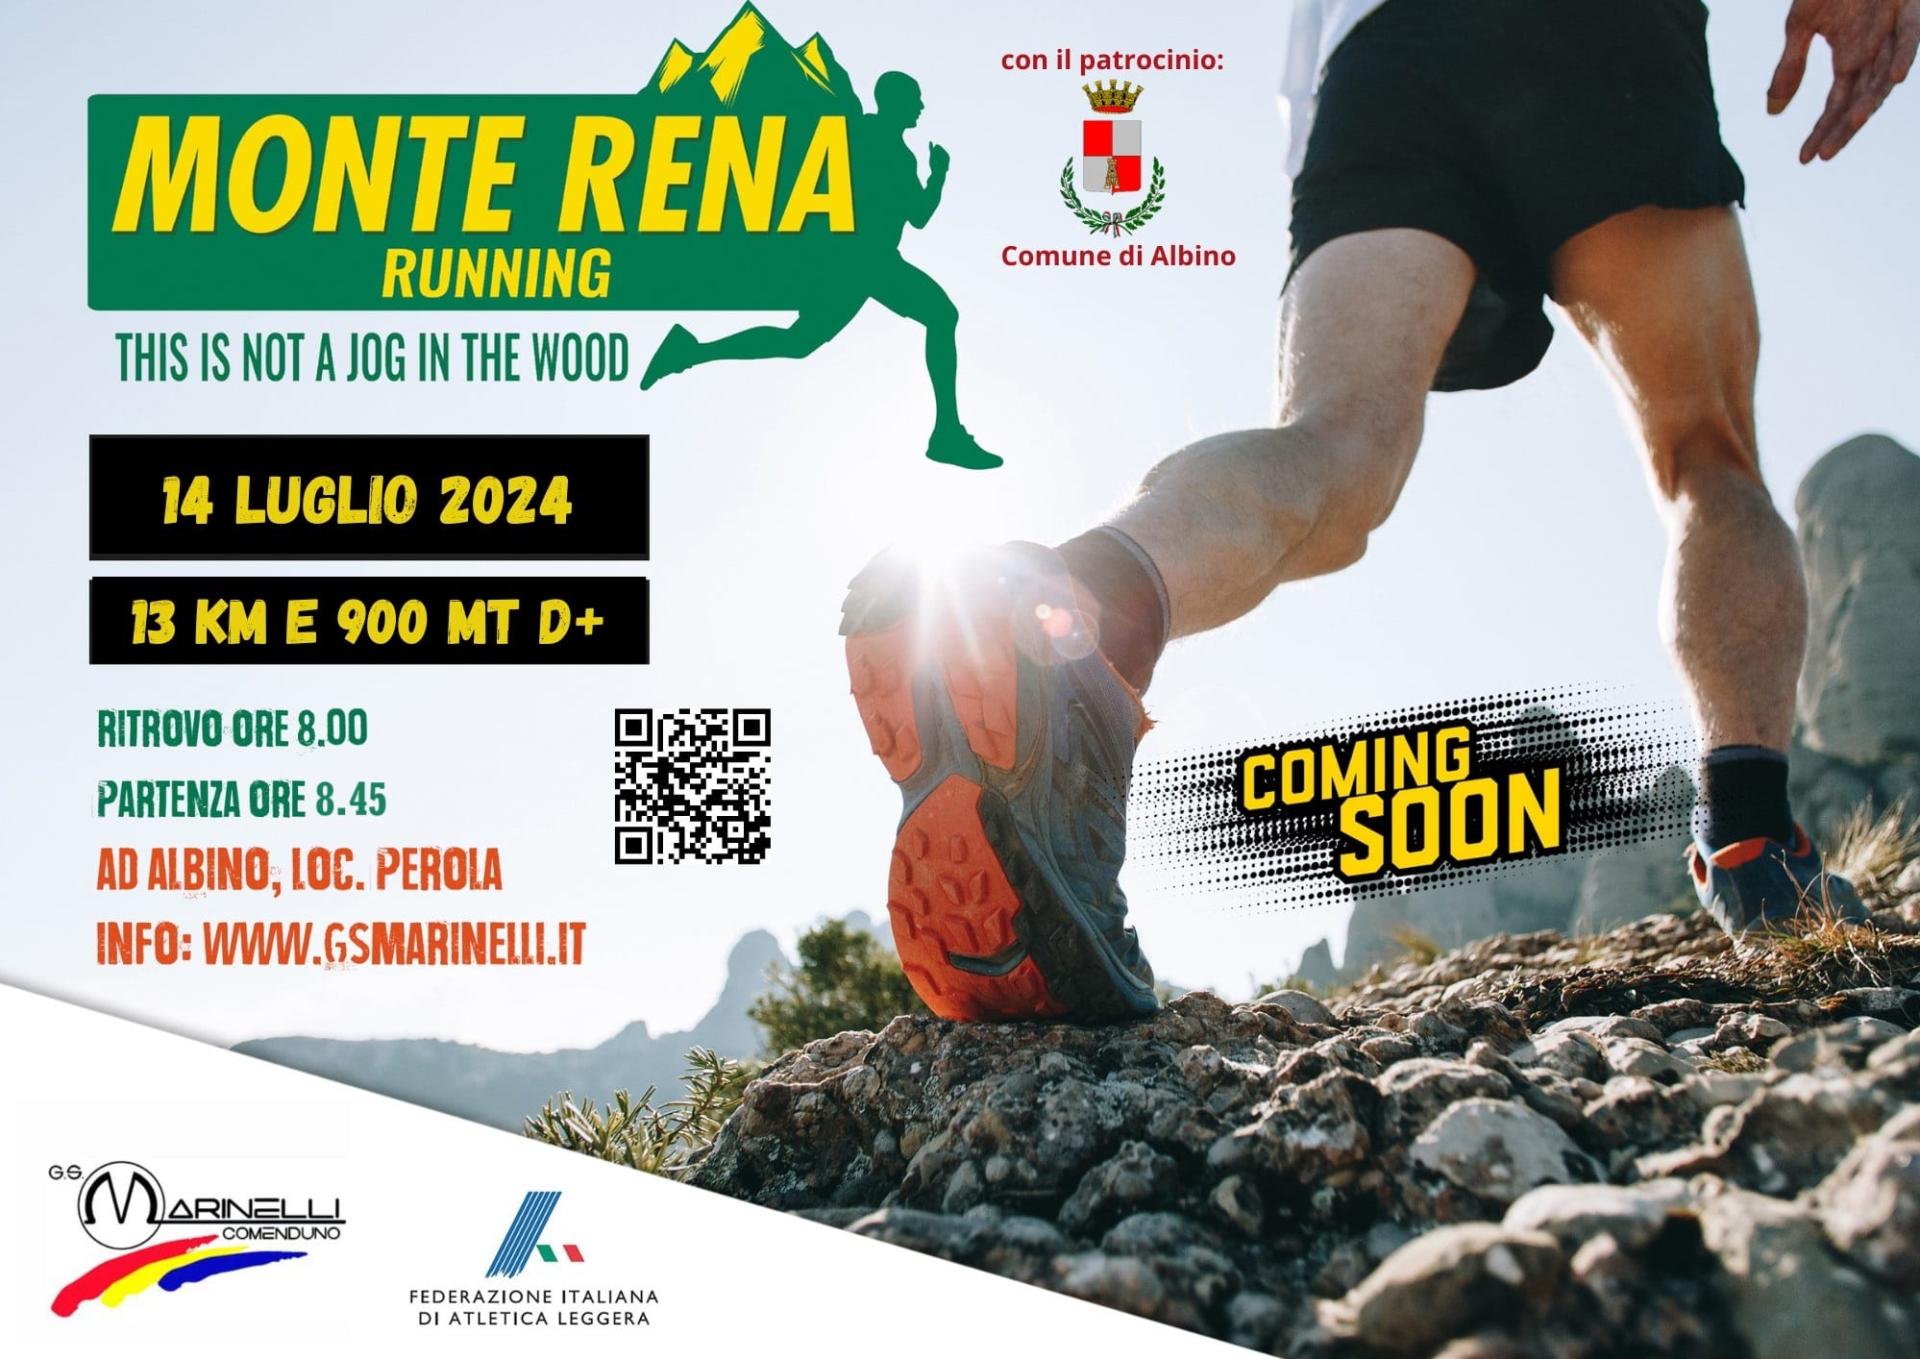 Monte Rena Running